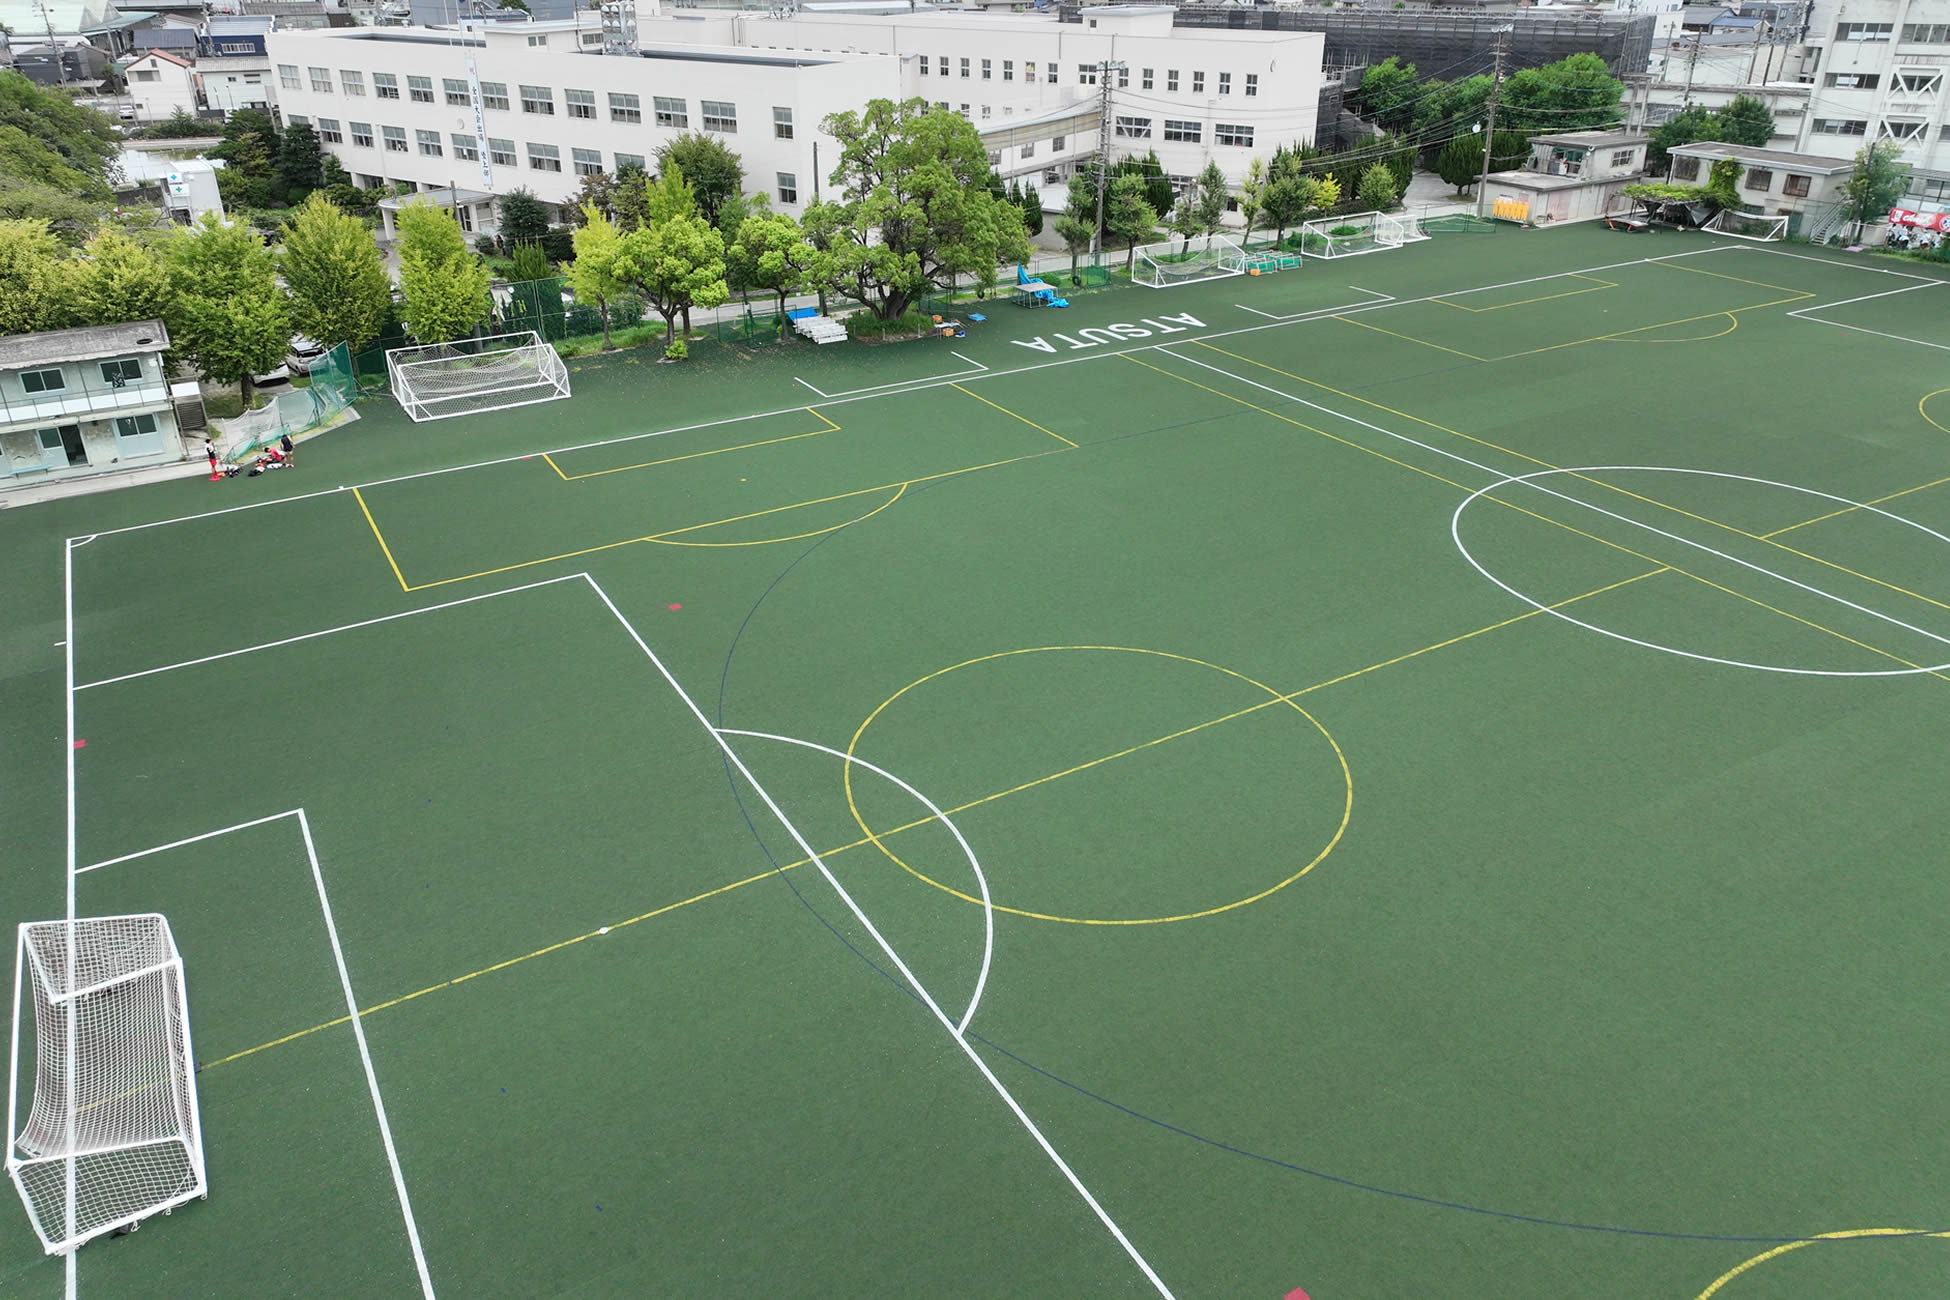 熱田高等学校同窓会70周年記念人工芝完成風景